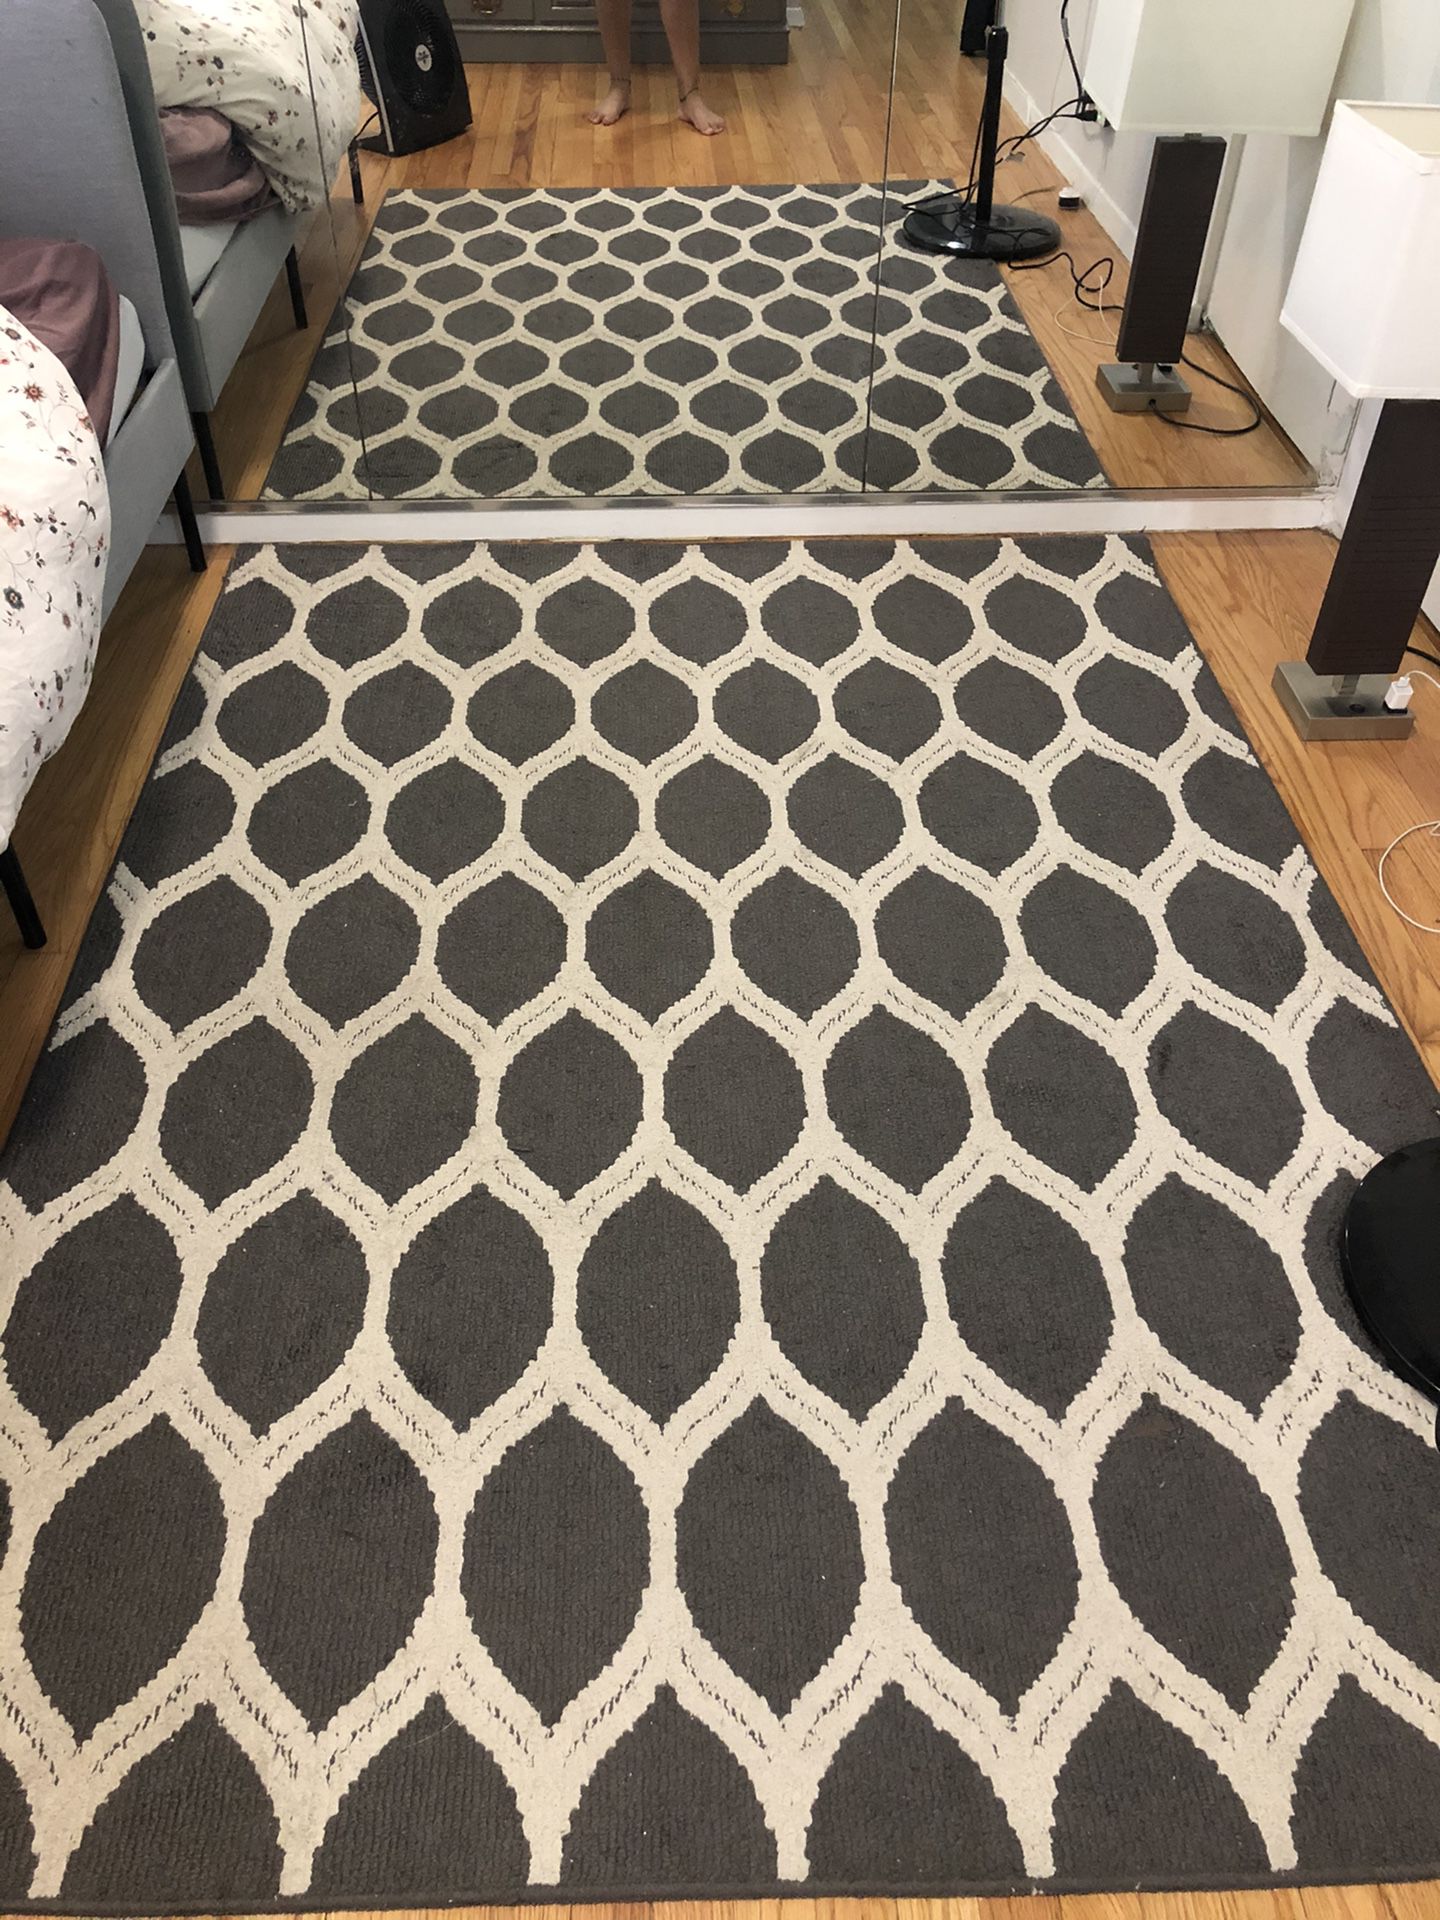 Grey patterned rug